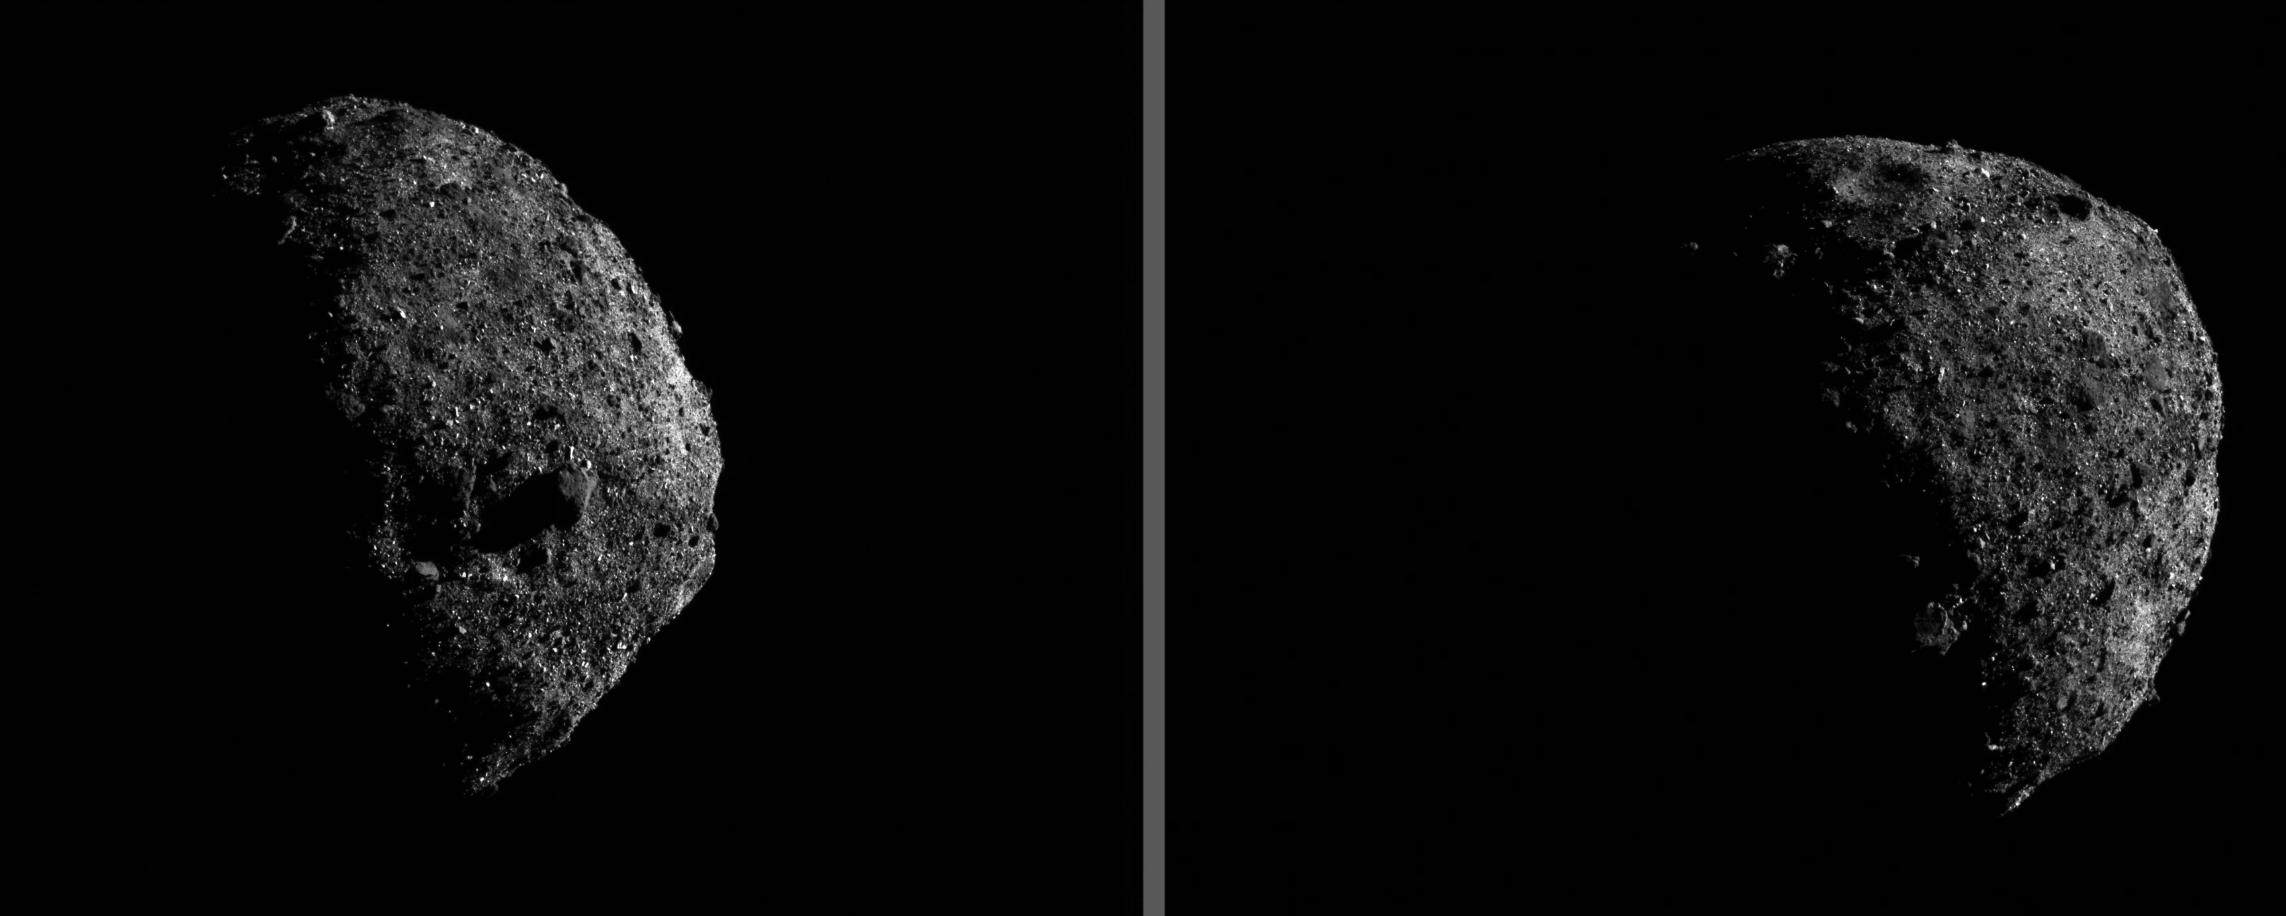 Sonda de la NASA toma las primeras fotografías del asteroide Bennu a menos de 2 km de distancia